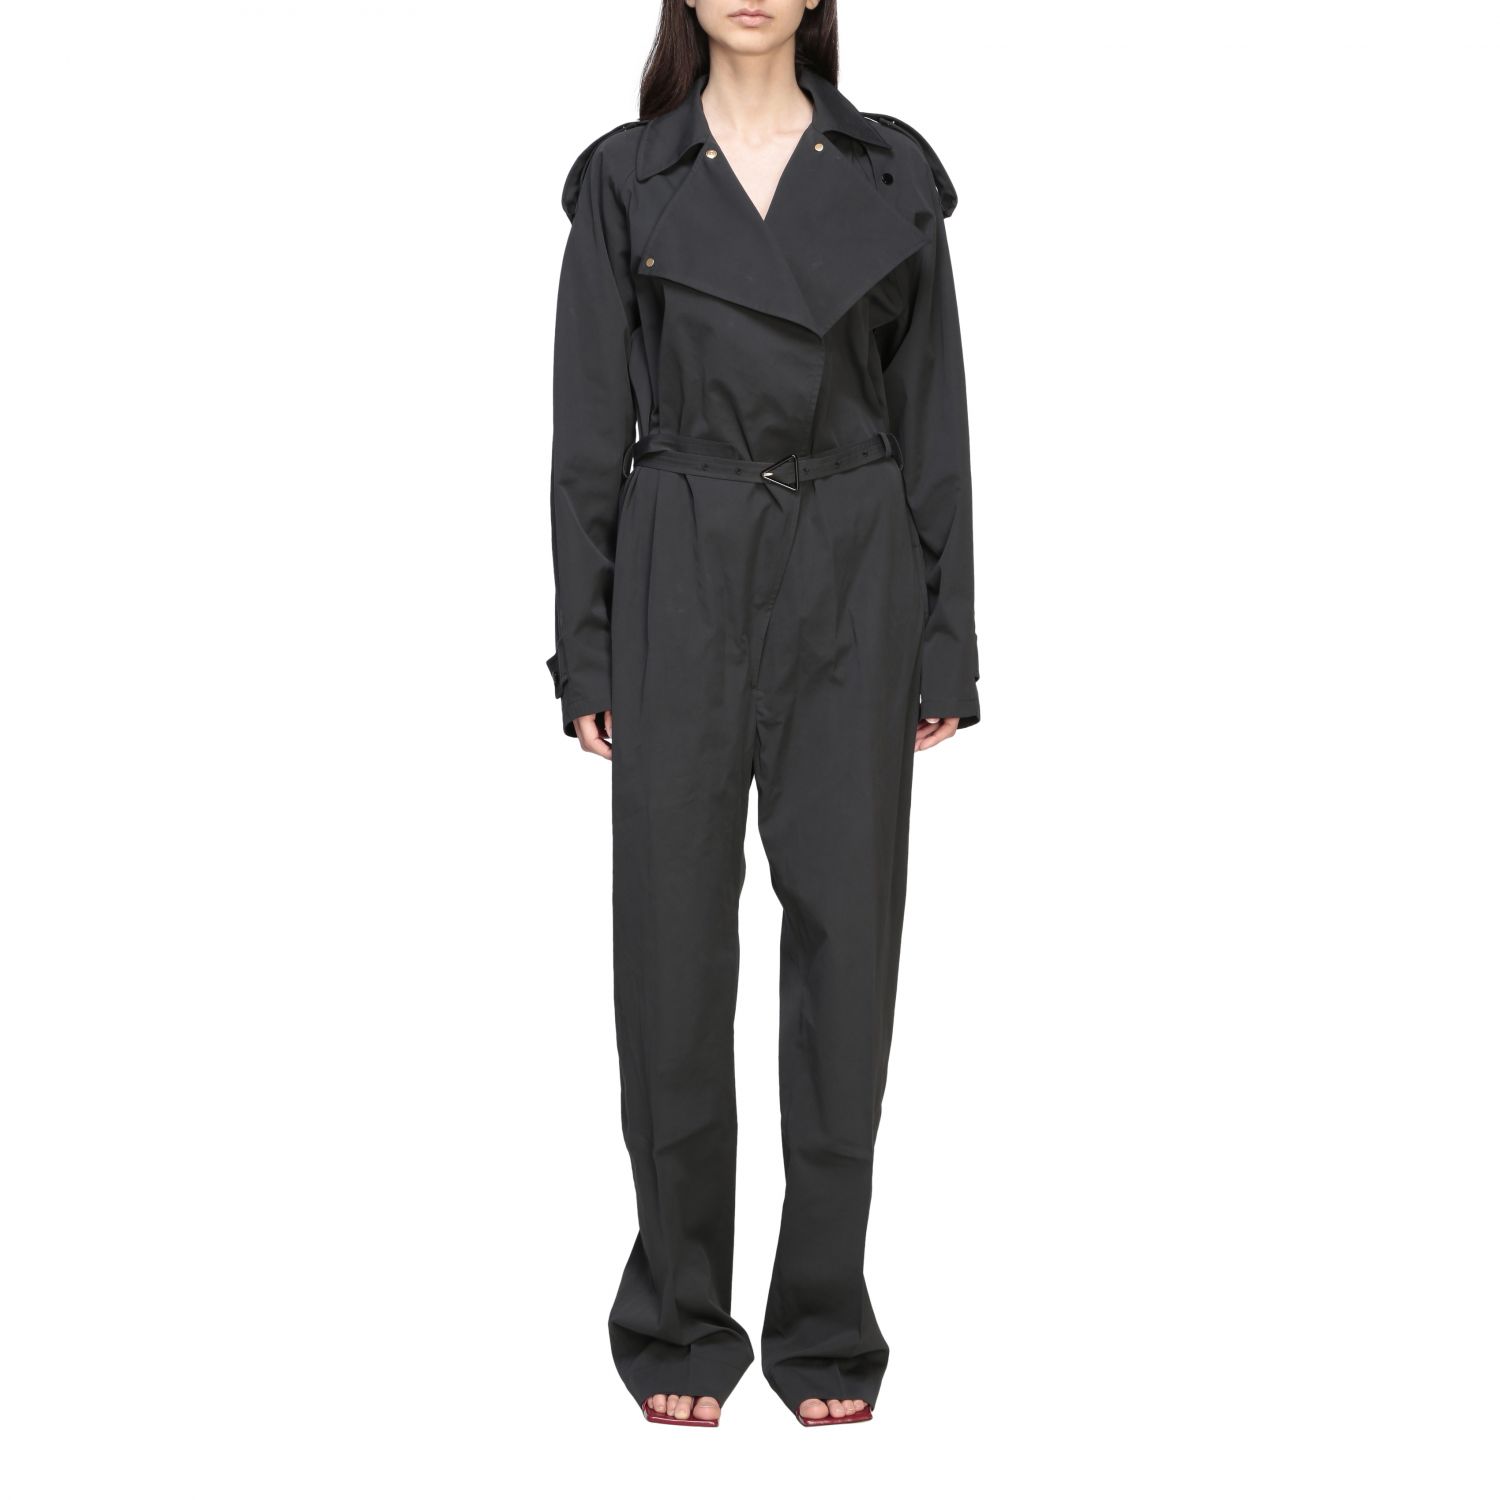 BOTTEGA VENETA: cotton trench-style jumpsuit - Black | Bottega